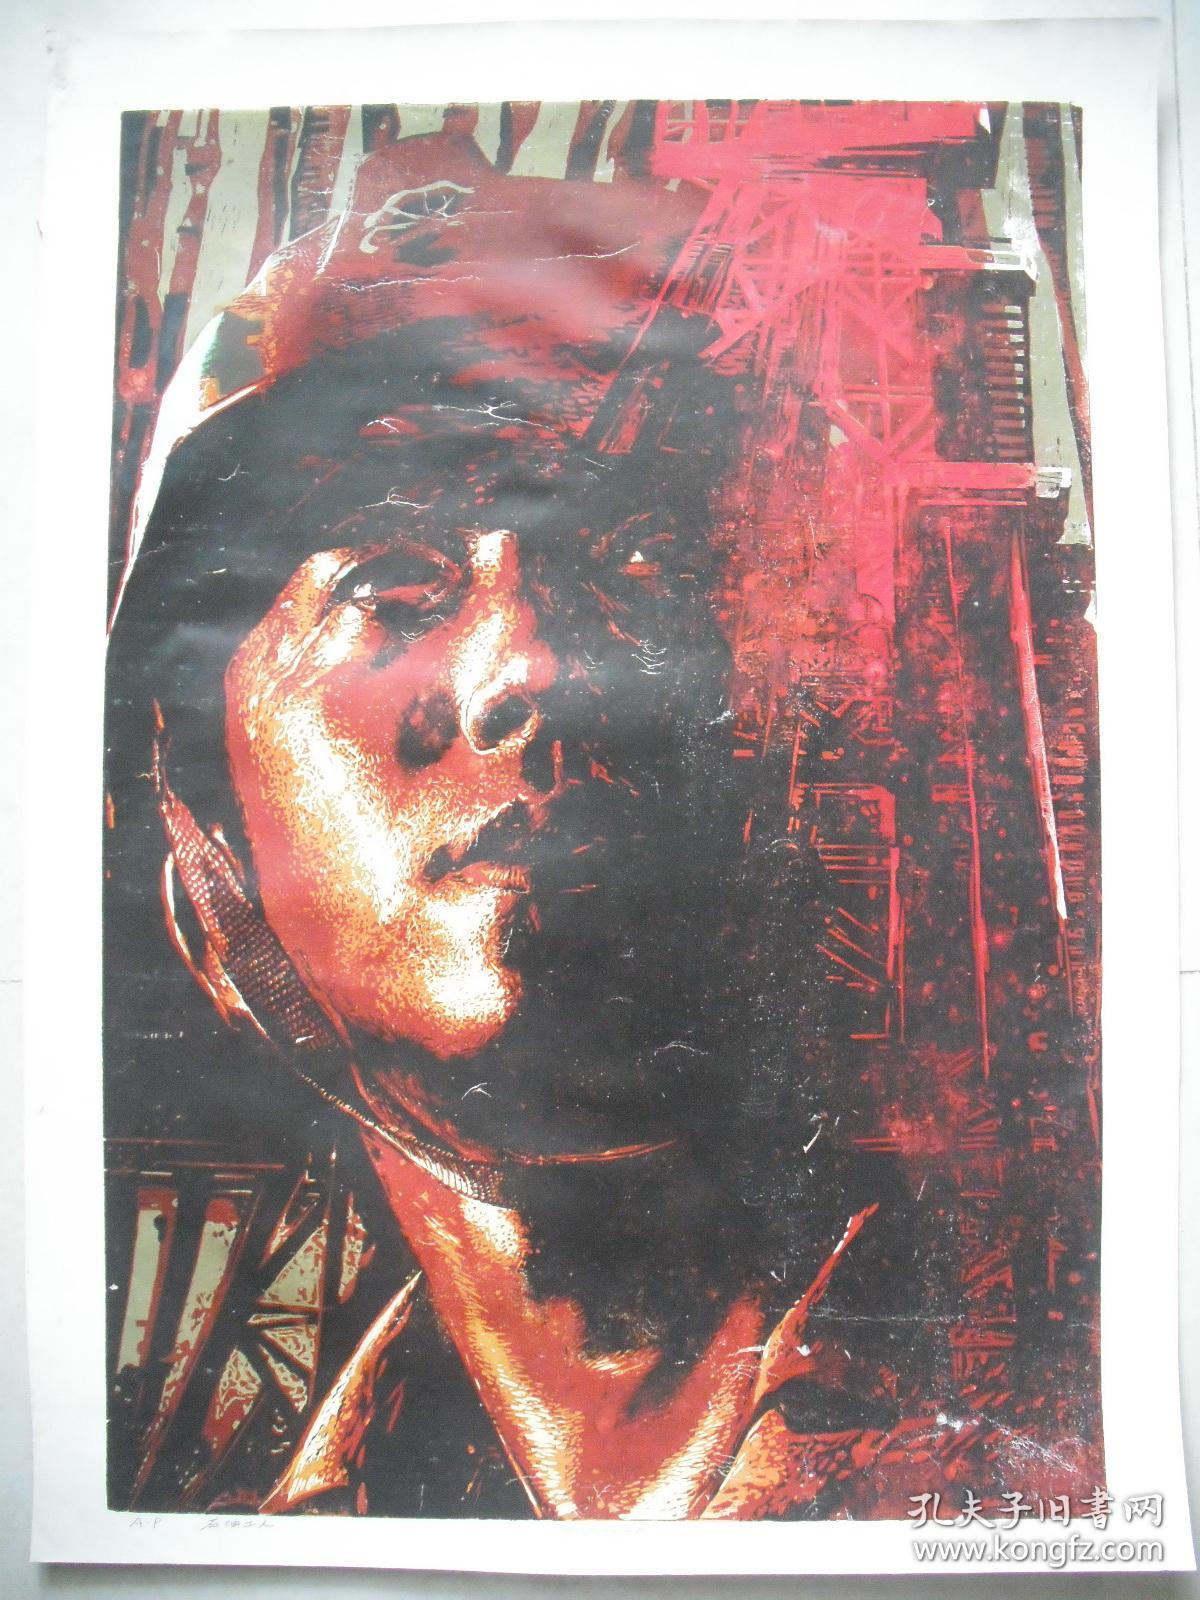 【崔柏涛】油印套色木刻版画  《石油工人》 大幅：99X73厘米